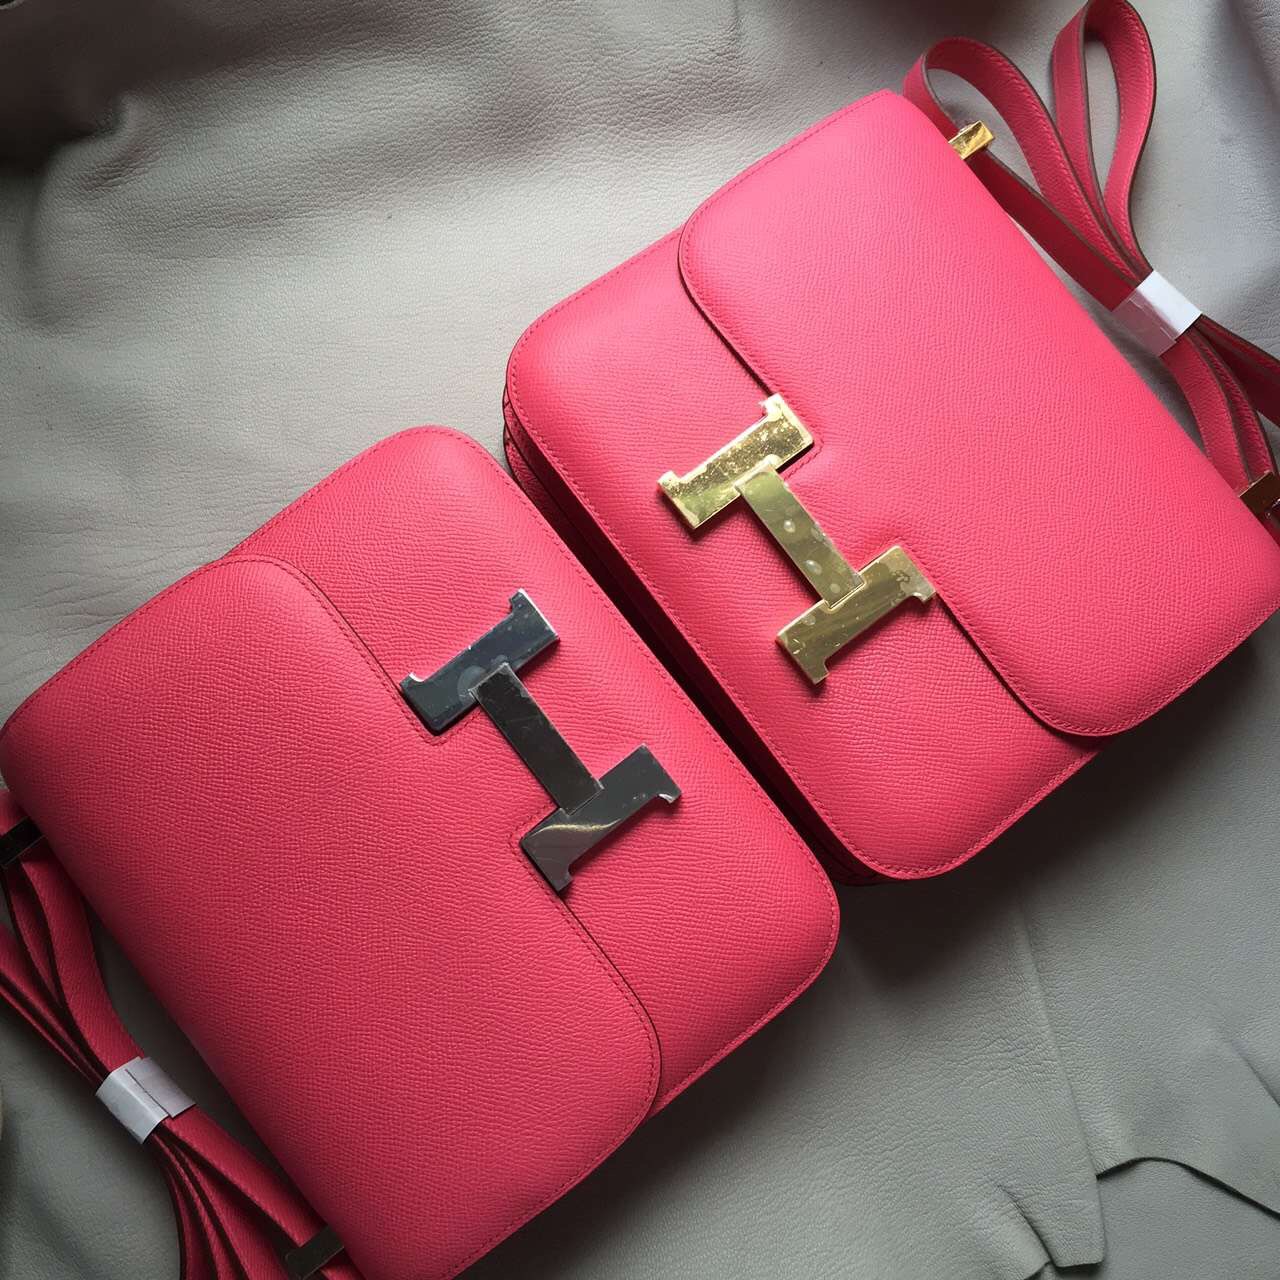 Wholesale Hermes Hot Pink Epsom Leather Constance Bag 24cm